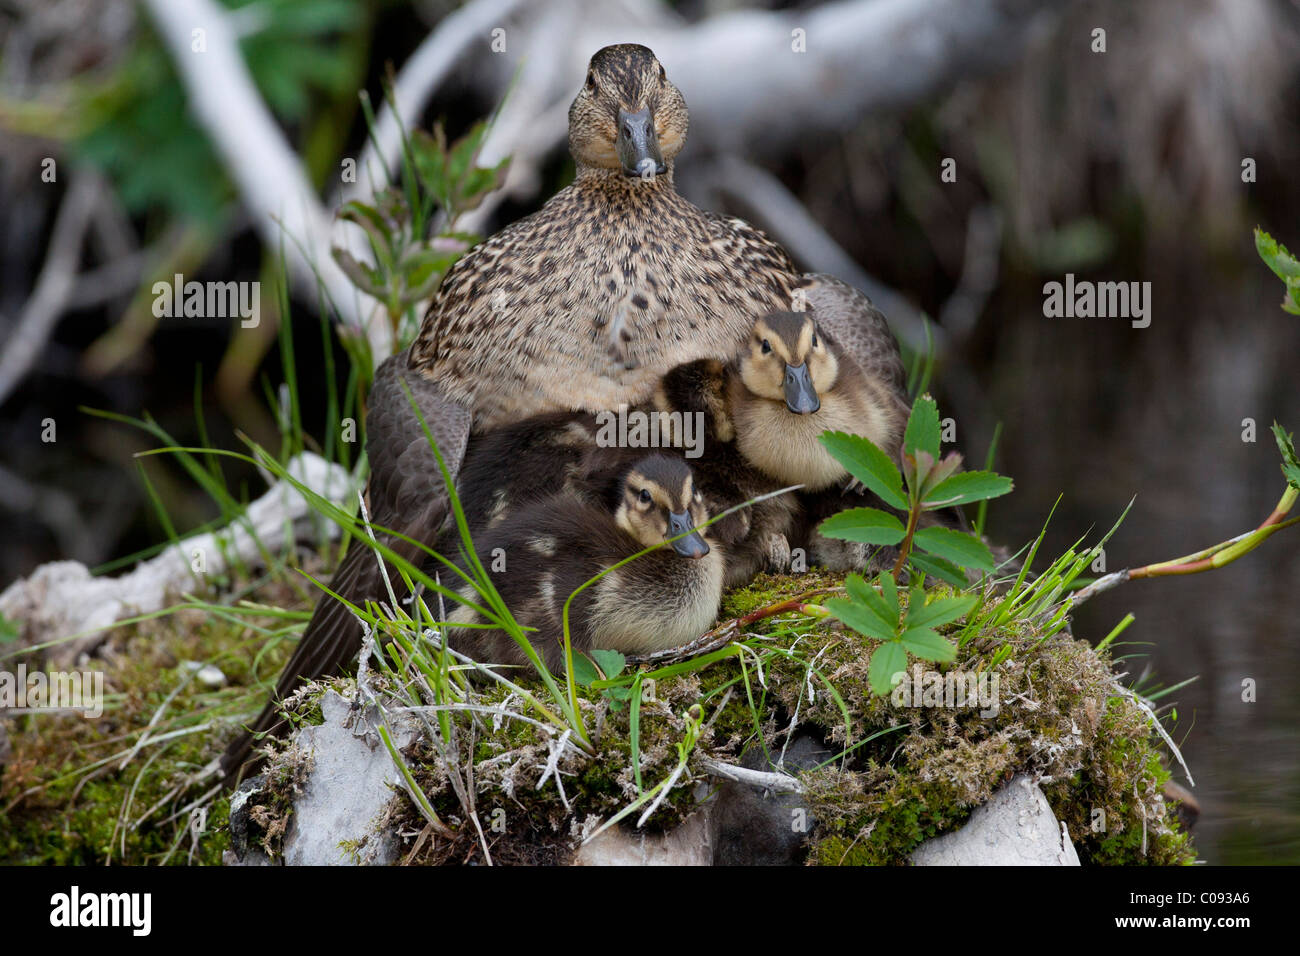 Eine grüne – Winged Teal-Henne und ihre Kupplung von Entenküken sitzen auf einem Baumstumpf Rasen bedeckt in einem kleinen Teich Anchorage, Alaska Yunan Stockfoto